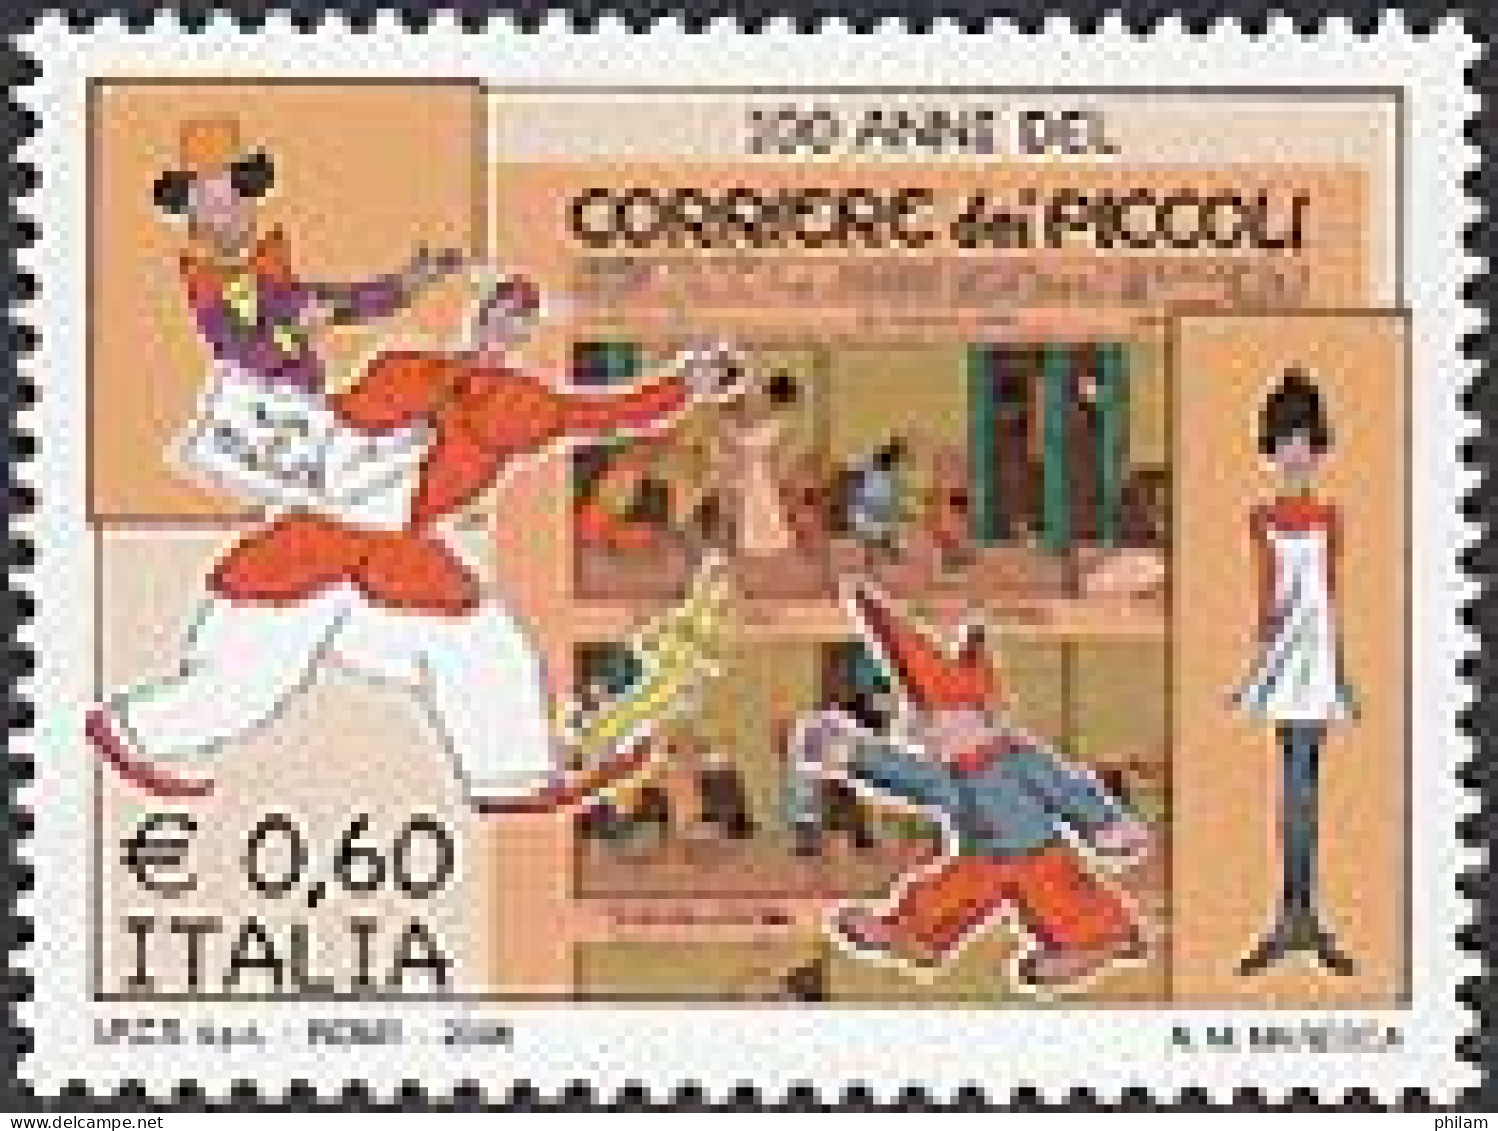 ITALIE 2008-Courrier Des Petits-1 V. - 2001-10: Ungebraucht